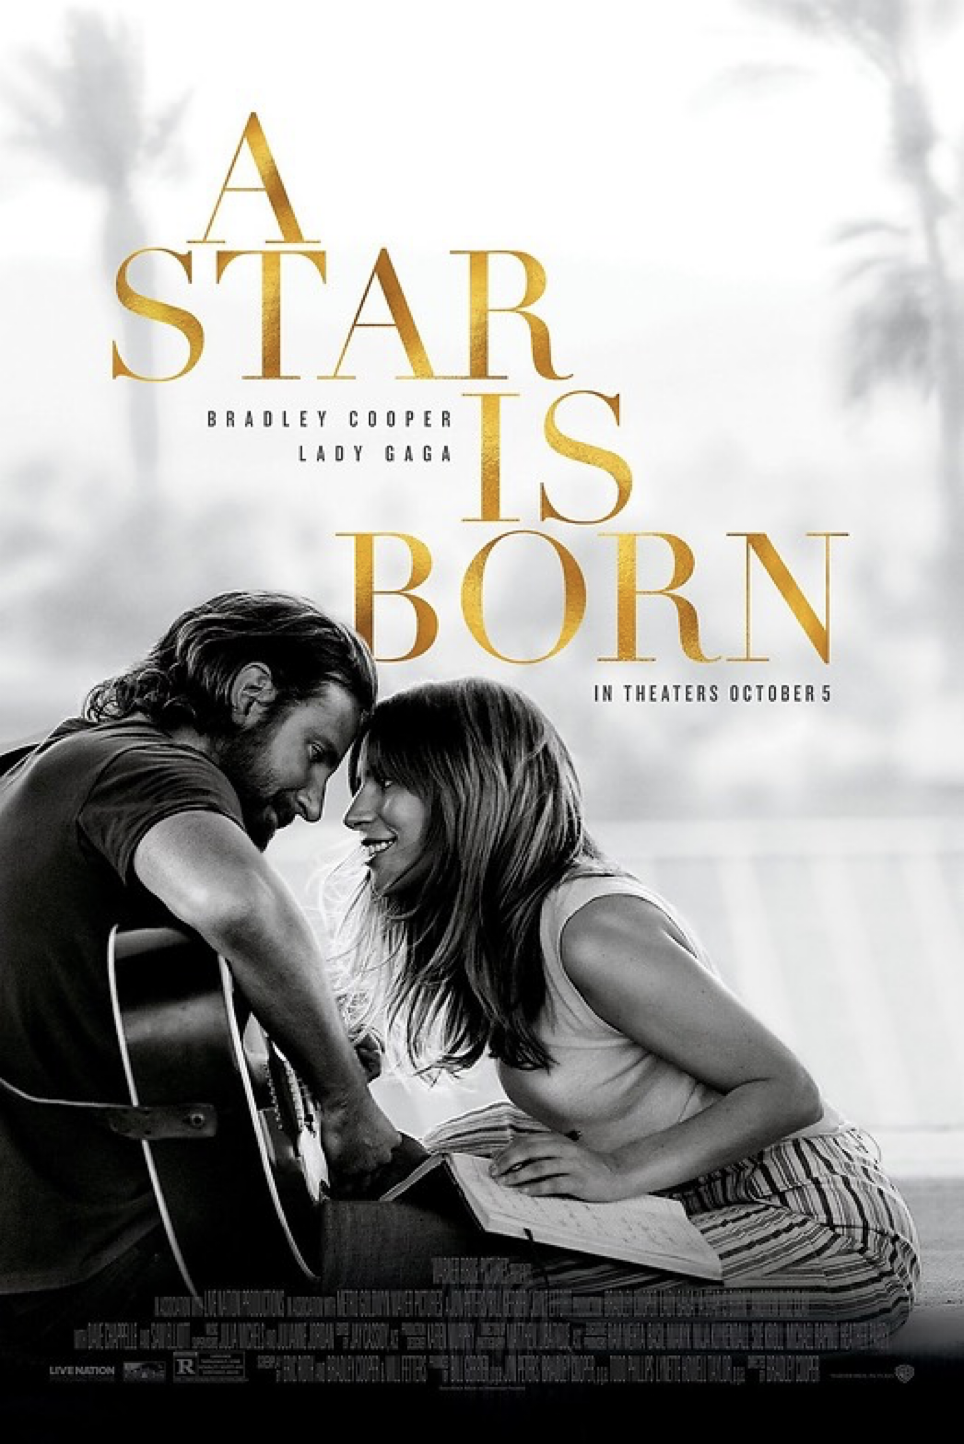 Esta es la portada de la película de Ha nacido una estrella (en inglés "A star is born"). Parece que te venden una comedia romántica, ¿verdad?